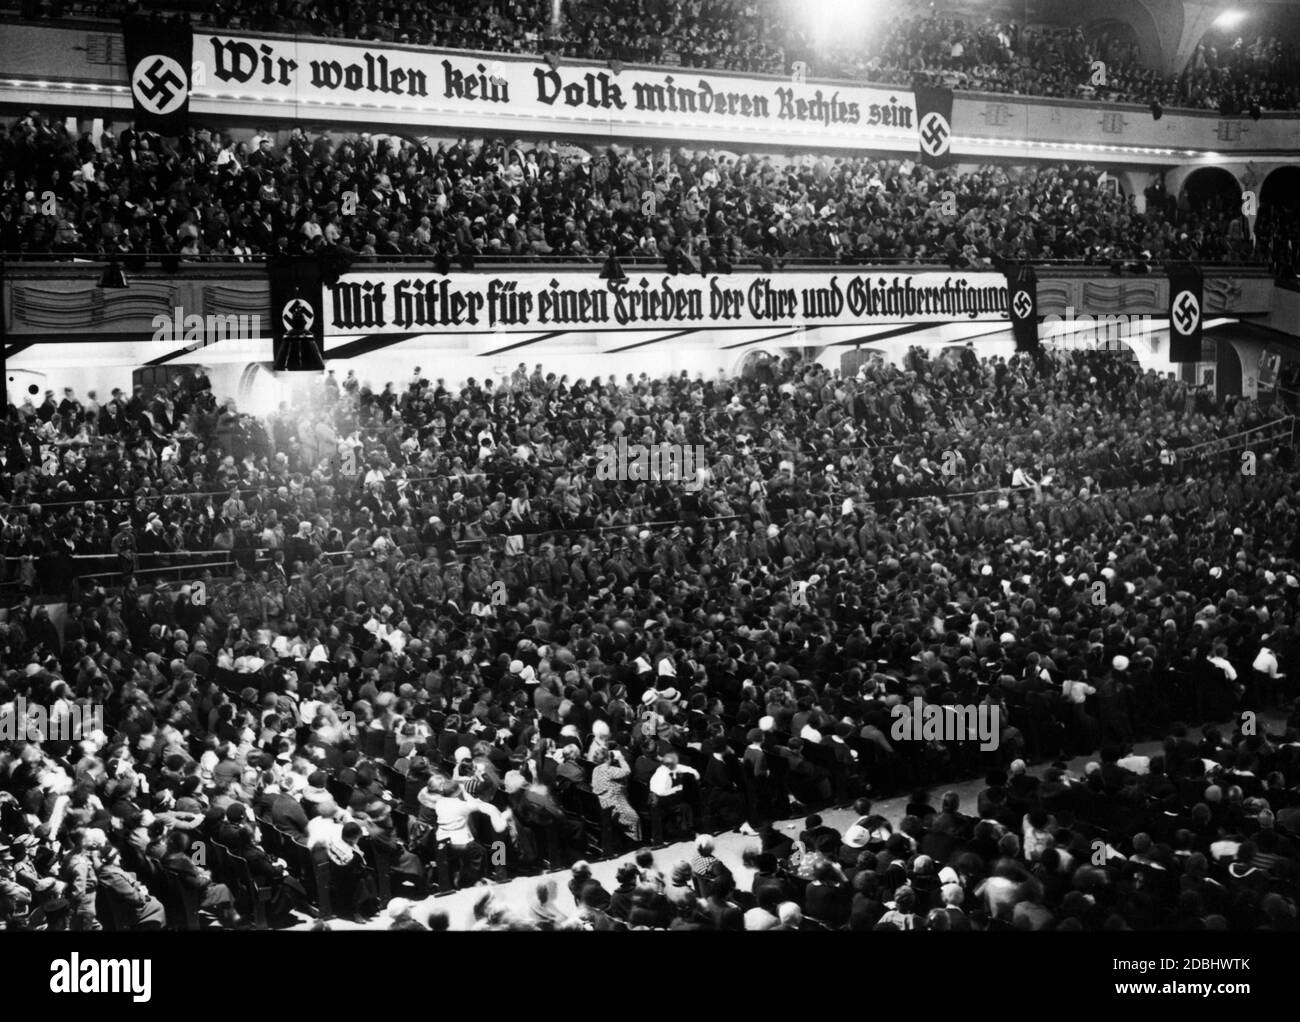 'Banner con las palabras ''Wir wollen kein Volk minderen Rechtes sein' (''no queremos ser una nación con derechos inferiores') sobre un banner que dice 'Hitler fuer einen Frieden der Ehre und Gleichberechtigung'' (''con Hitler por una paz de honor e igualdad'') en una manifestación de las SA. Foto de stock